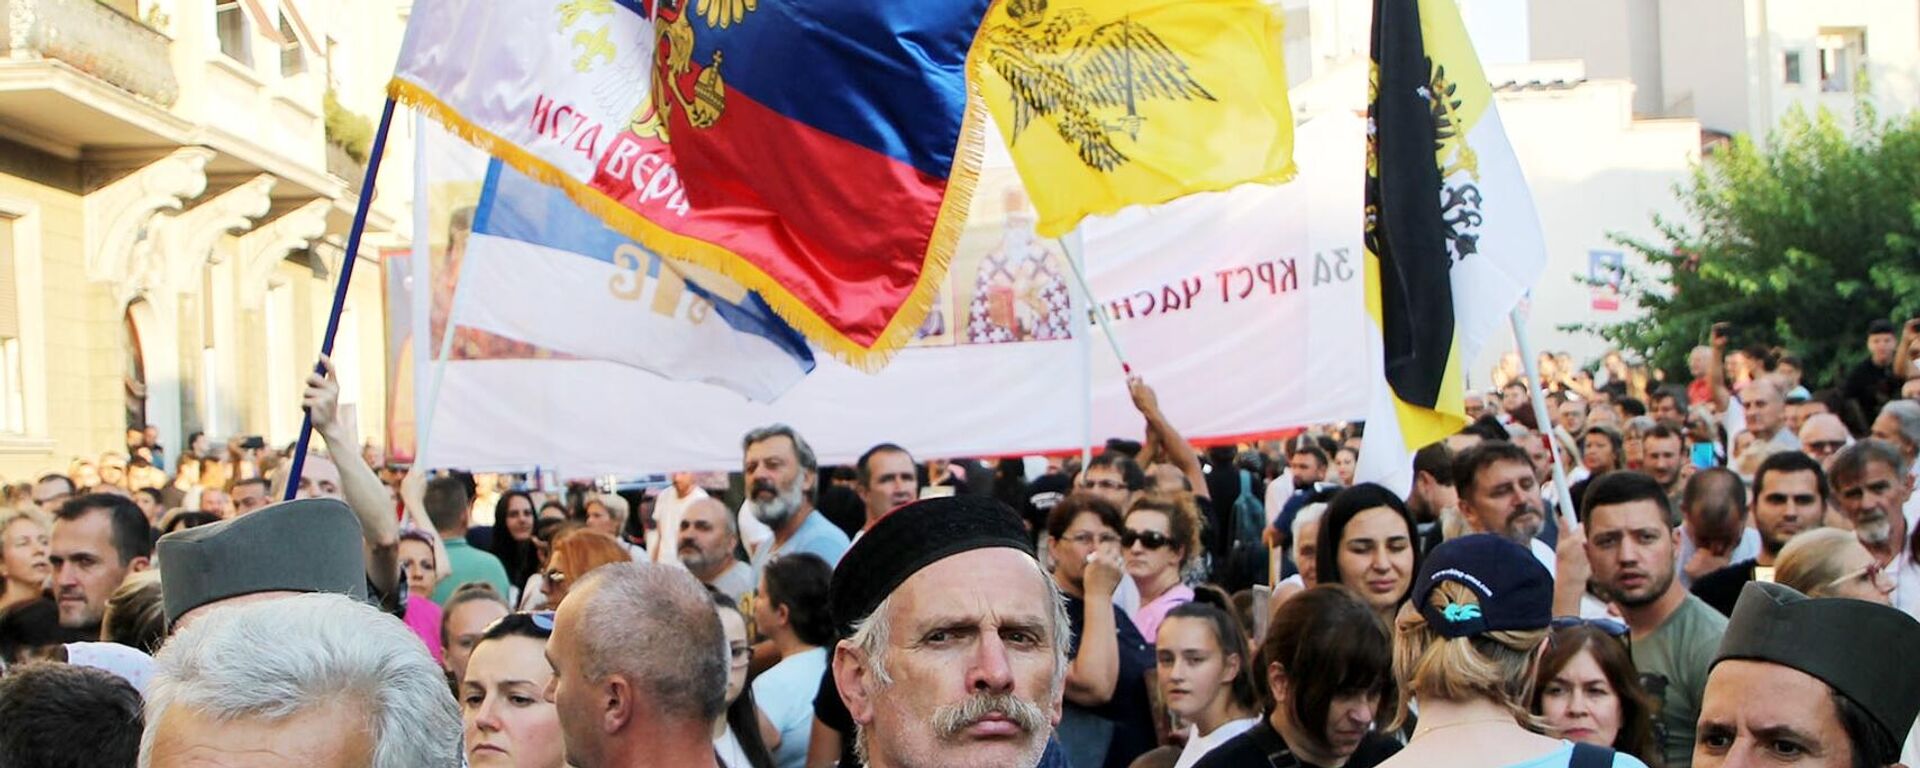 Marcha en Belgrado por los ideales tradicionales - Sputnik Mundo, 1920, 11.09.2022